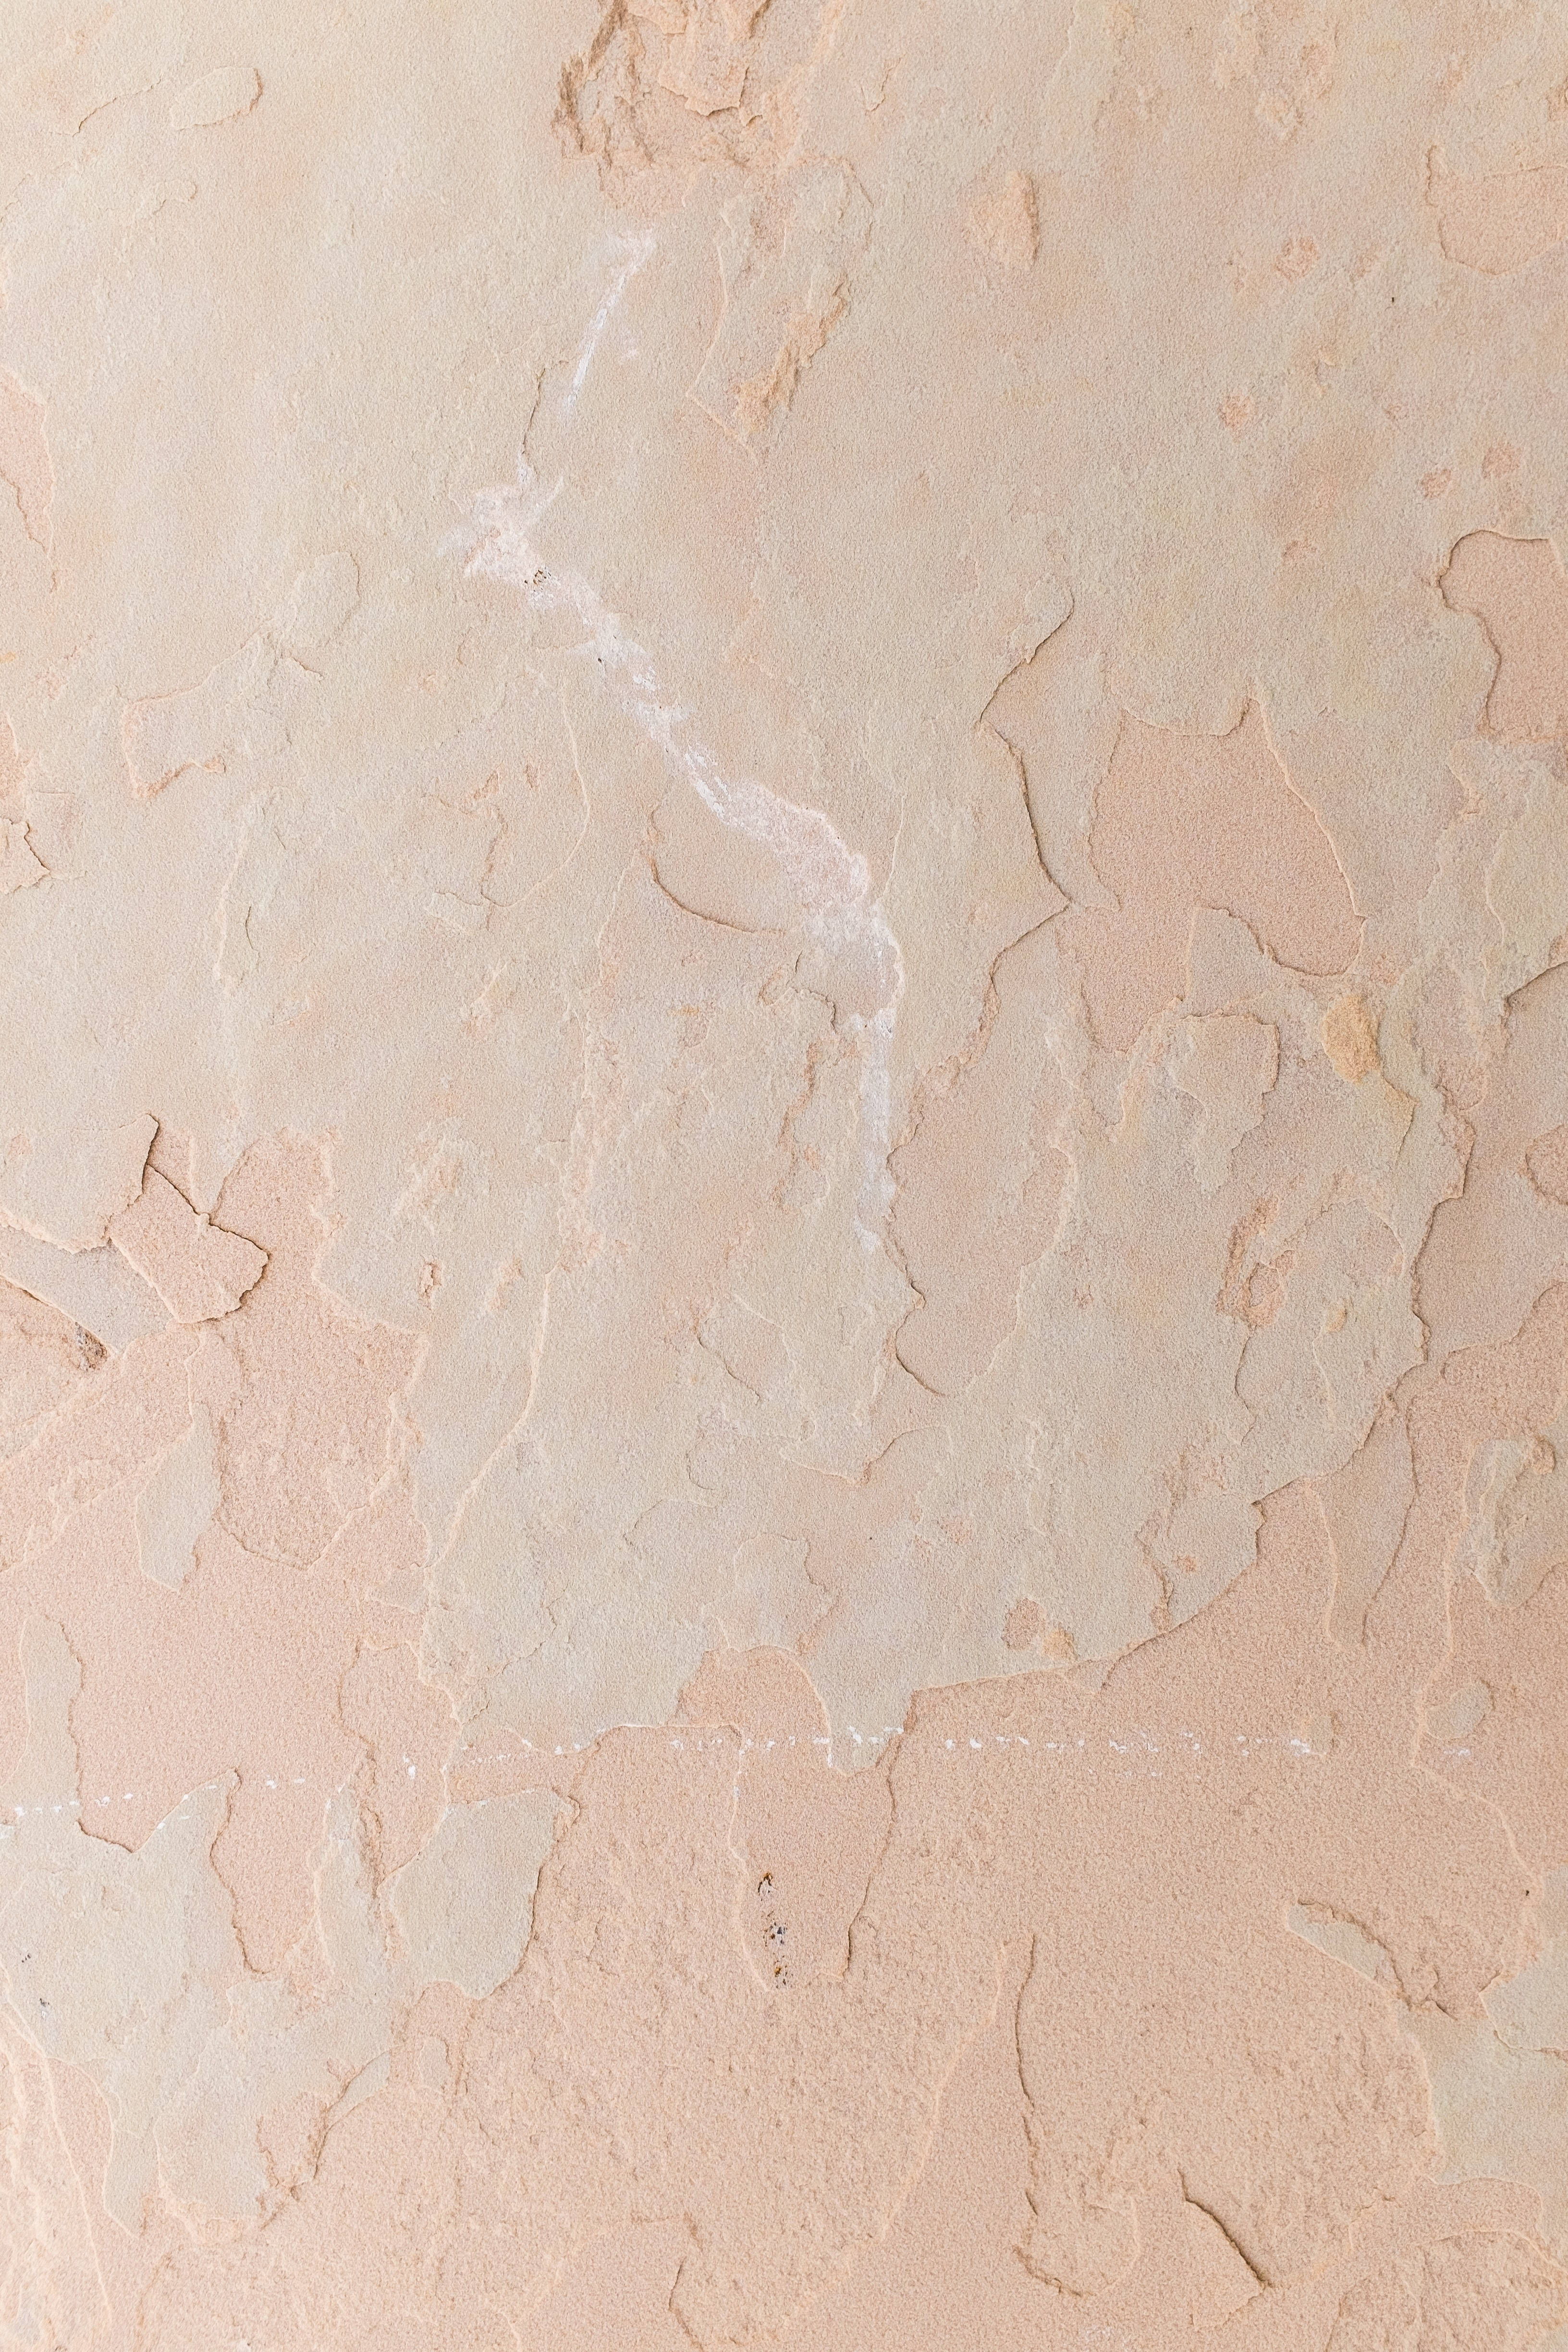 Beigestrukturiertes Marmor In 4k Wallpaper